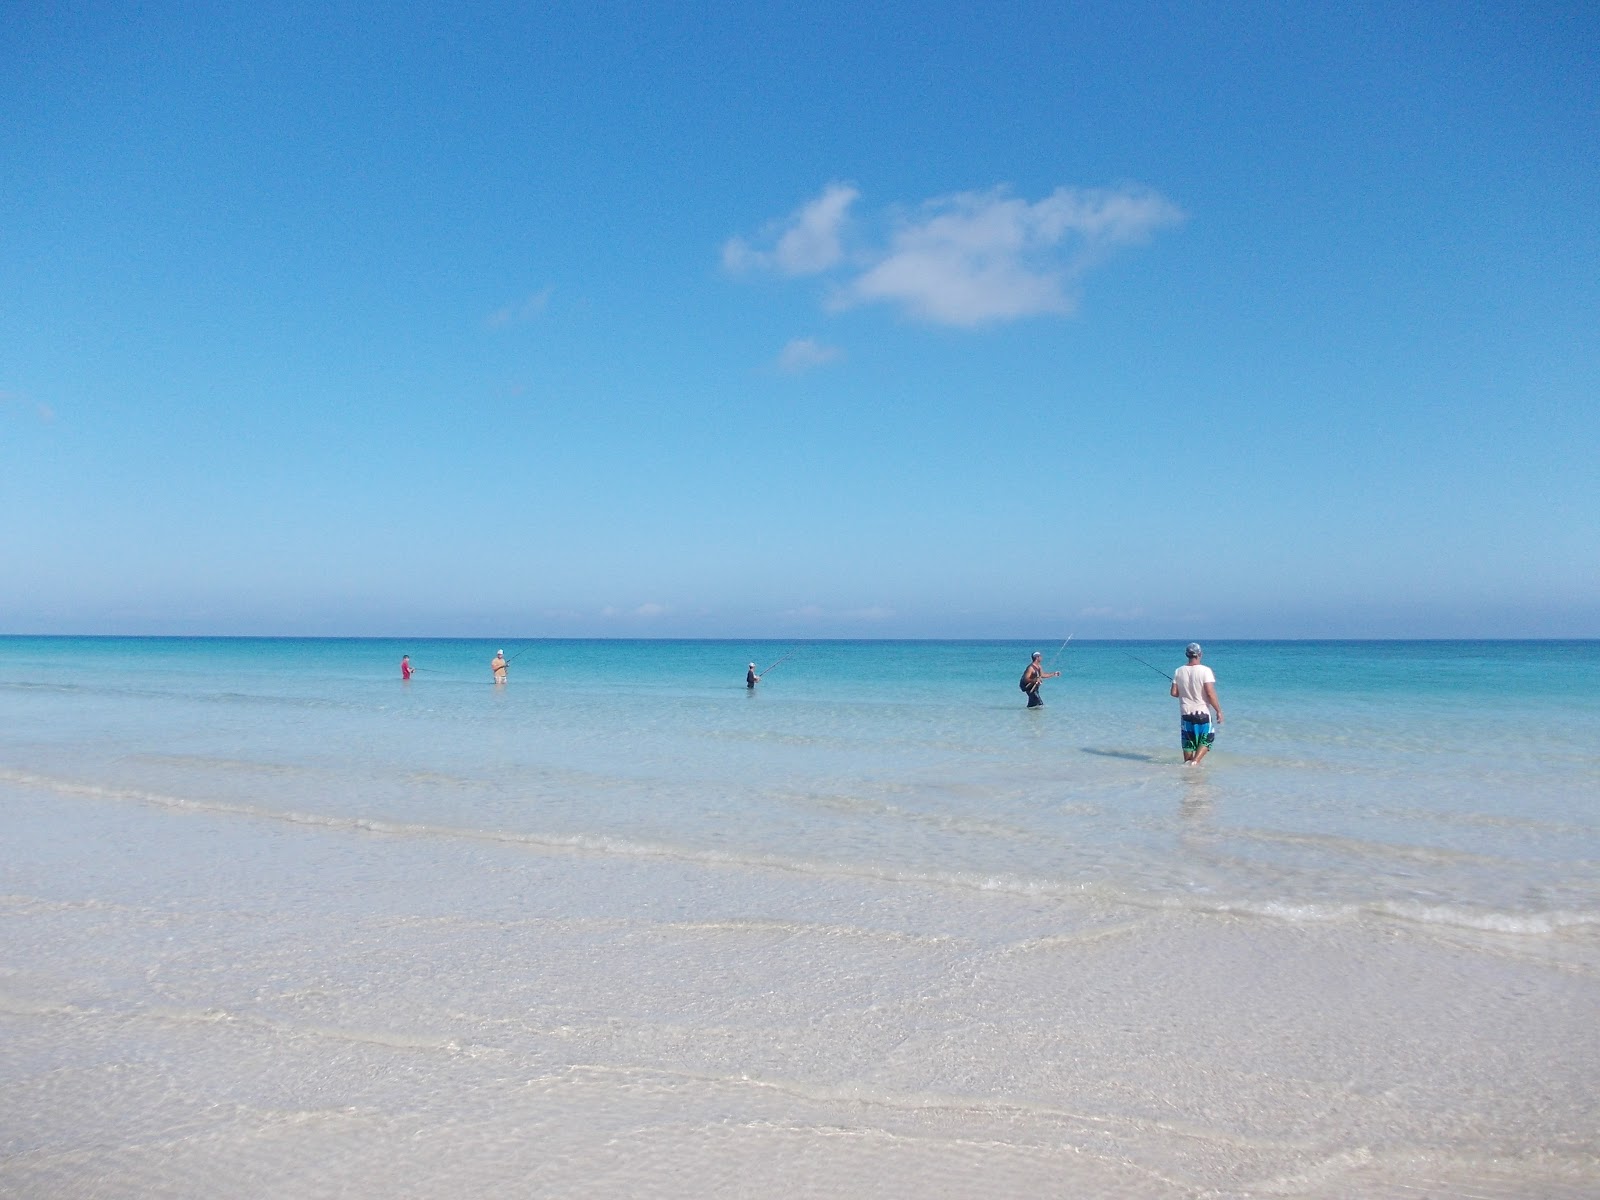 Playa Boca Ciega'in fotoğrafı parlak ince kum yüzey ile